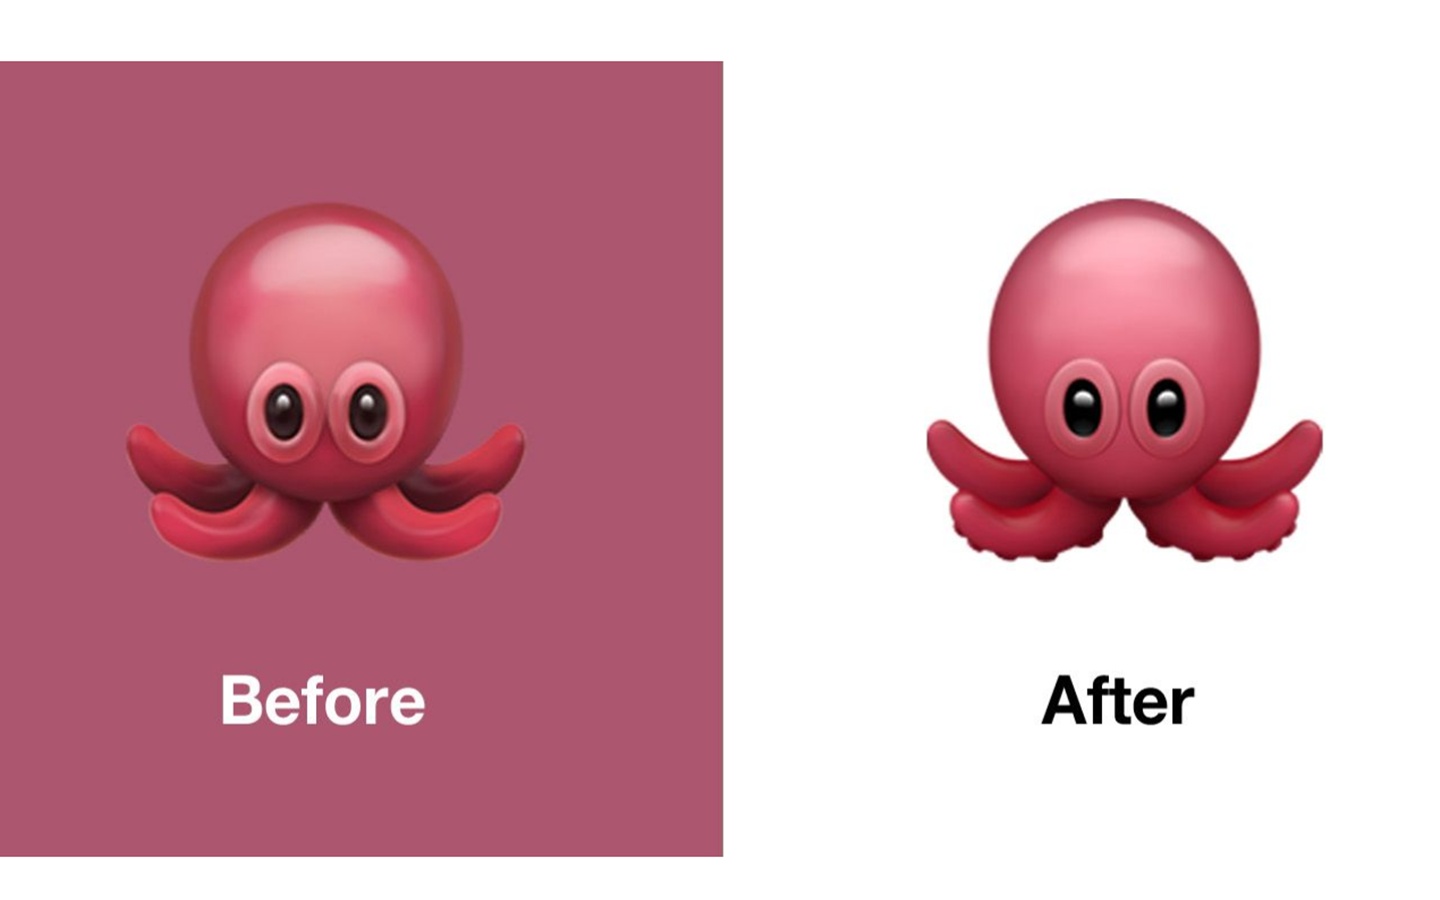 iOS 13.1更新了24個Emoji 蚊子多隻腳、章魚有吸盤、美人魚拿三叉戟